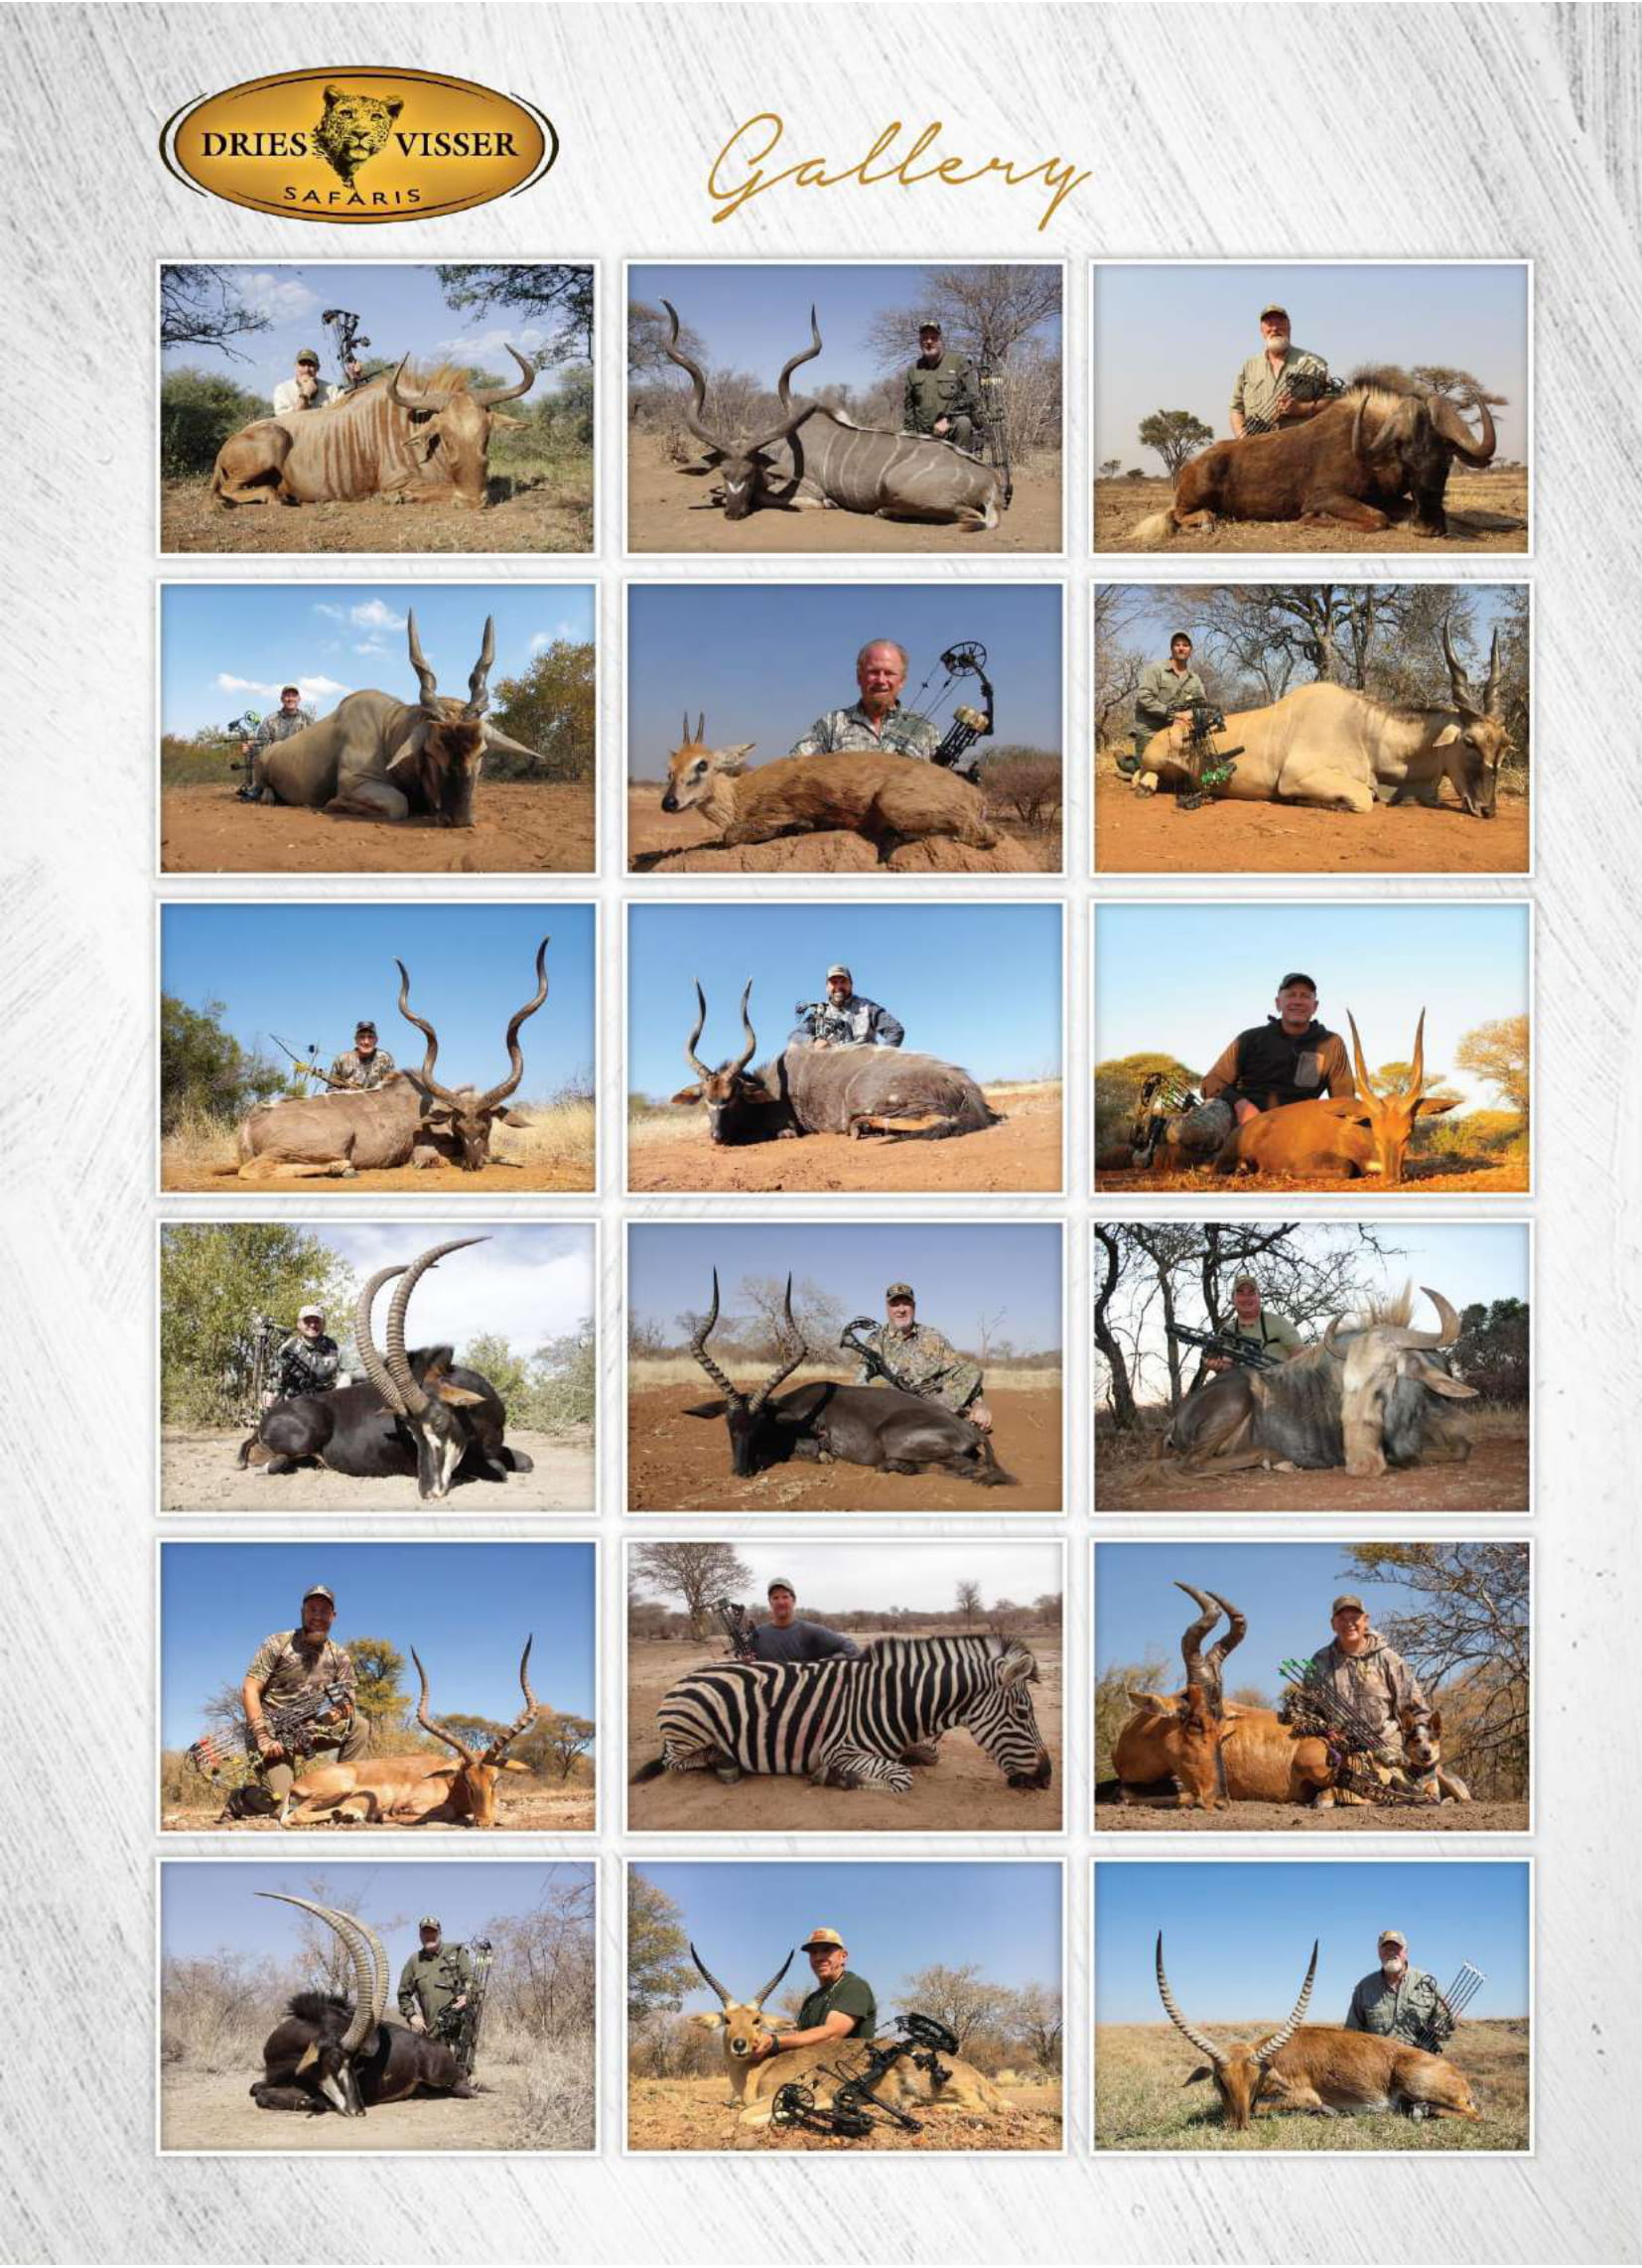 dries-visser-safaris-brochure-2021-10.jpg